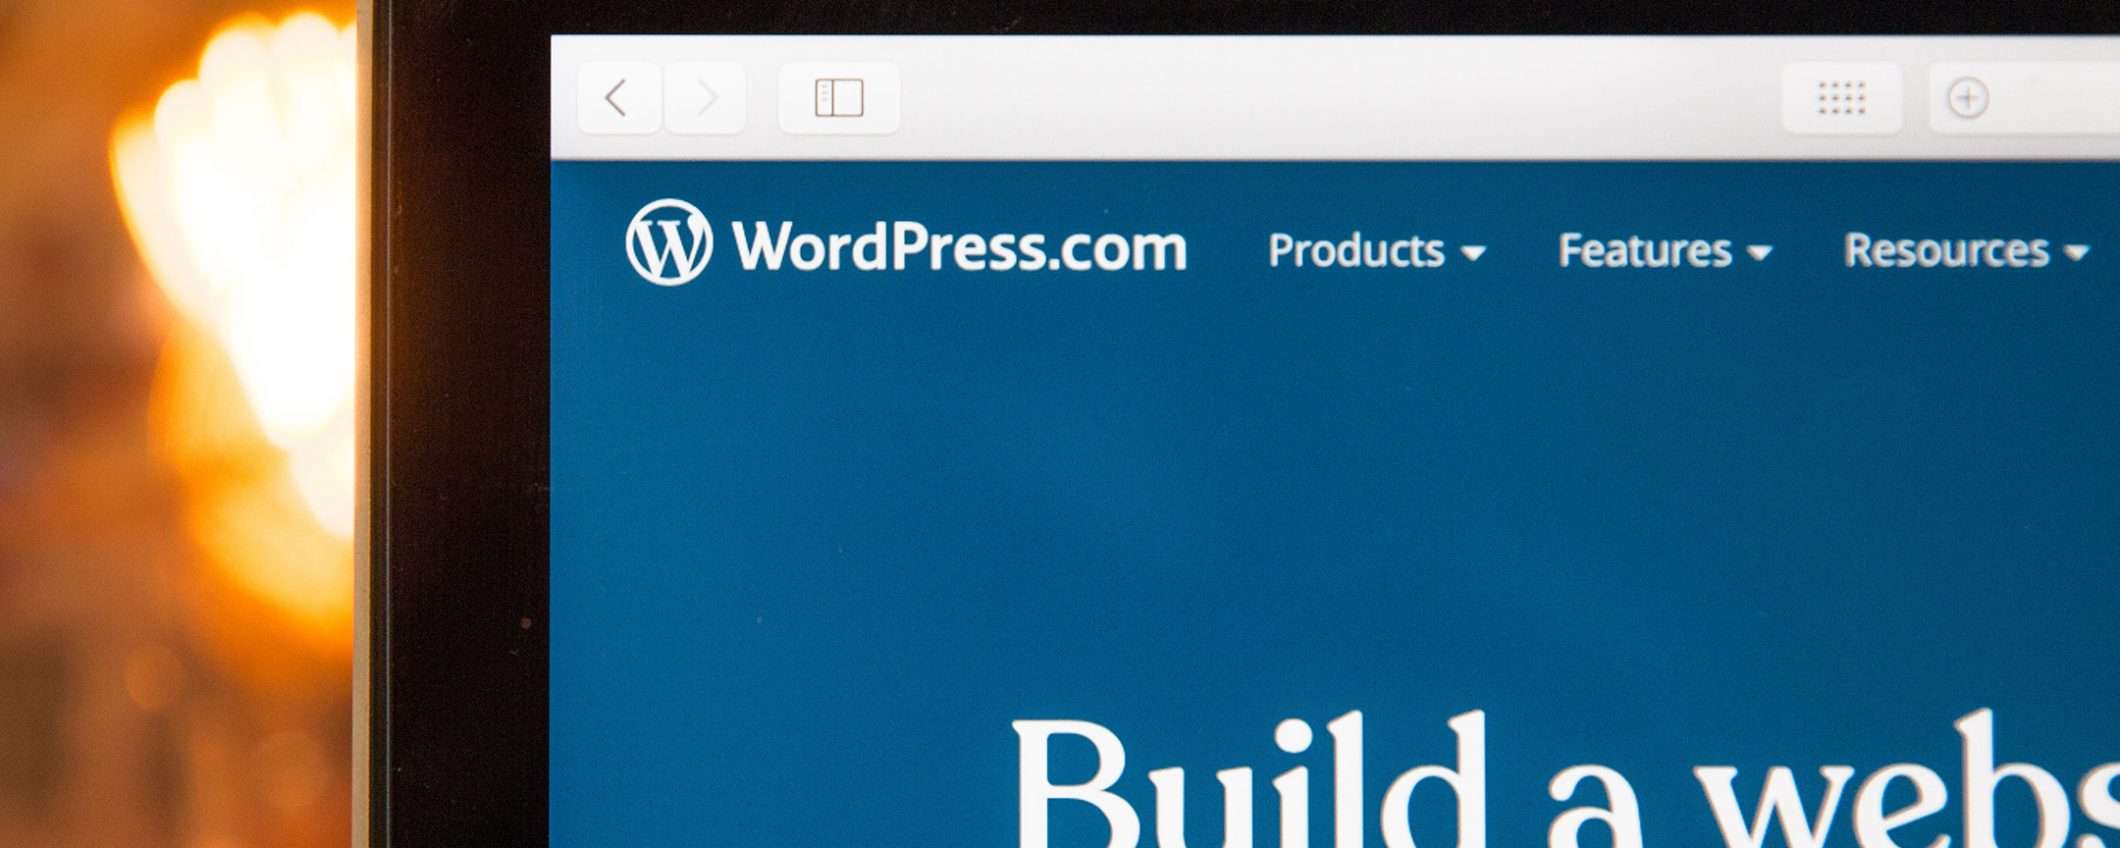 Manutenzione WordPress: per un sito web sicuro c'è il corso Udemy in sconto dell'86%